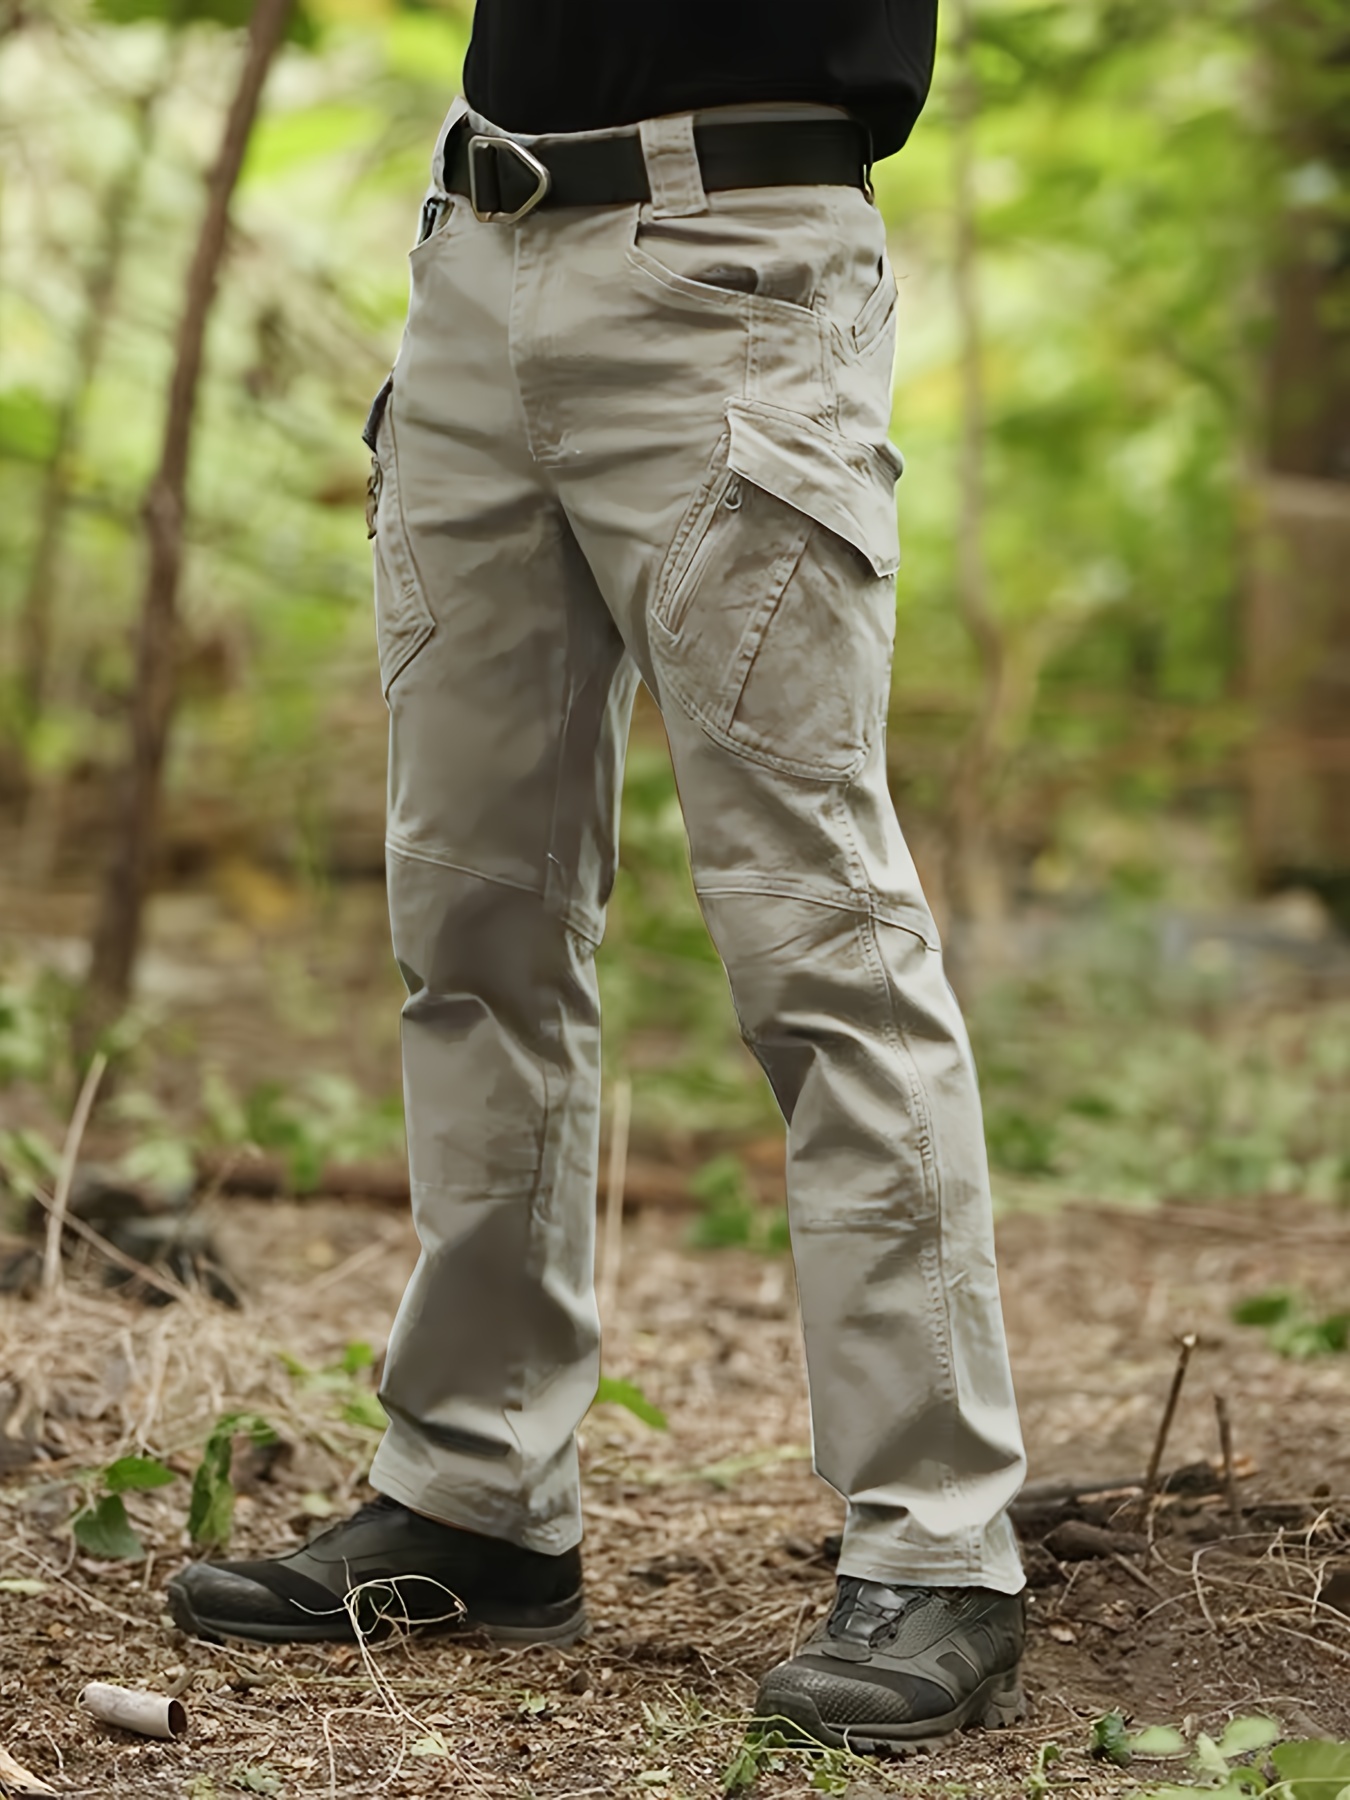 Honeeladyy Tactical Pants Camo Cargo Pants for Men Outdoor Hiking